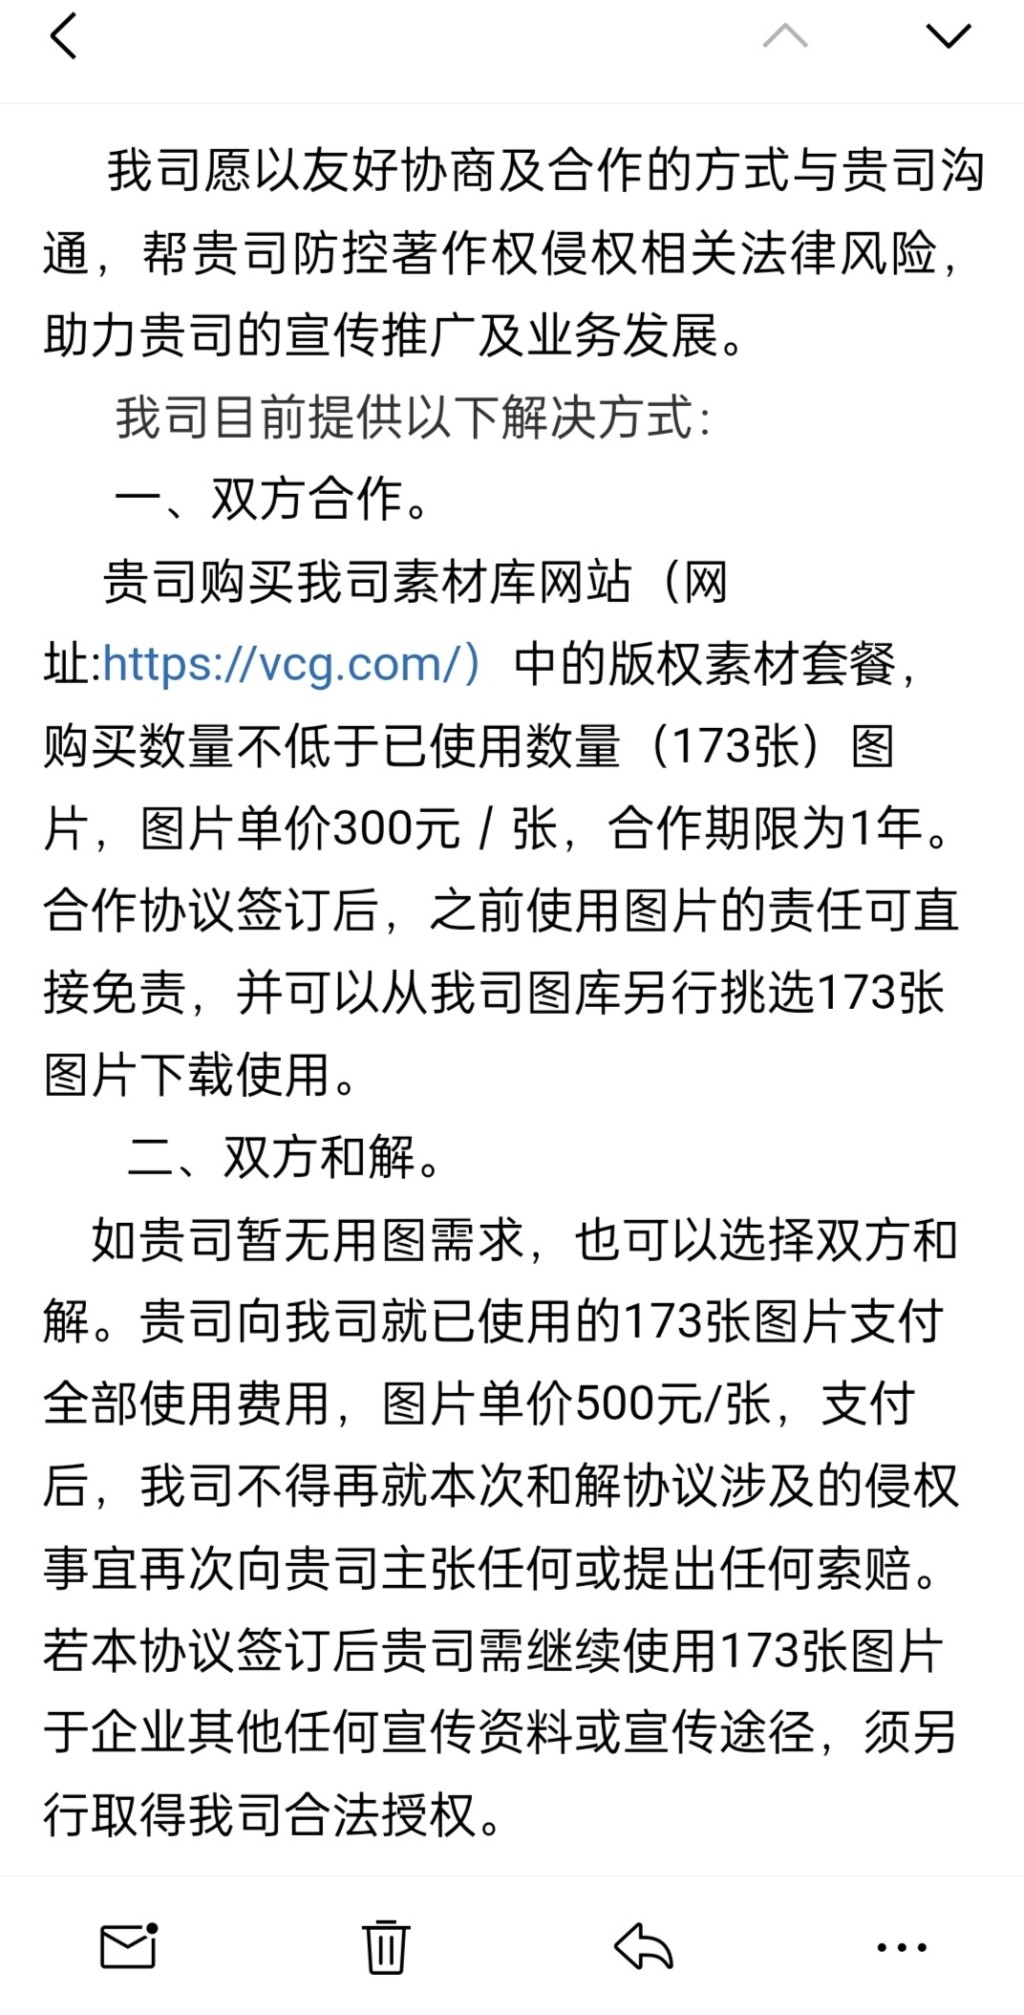 视觉中国提议戴建峰购买其套餐或赔钱和解。 微博